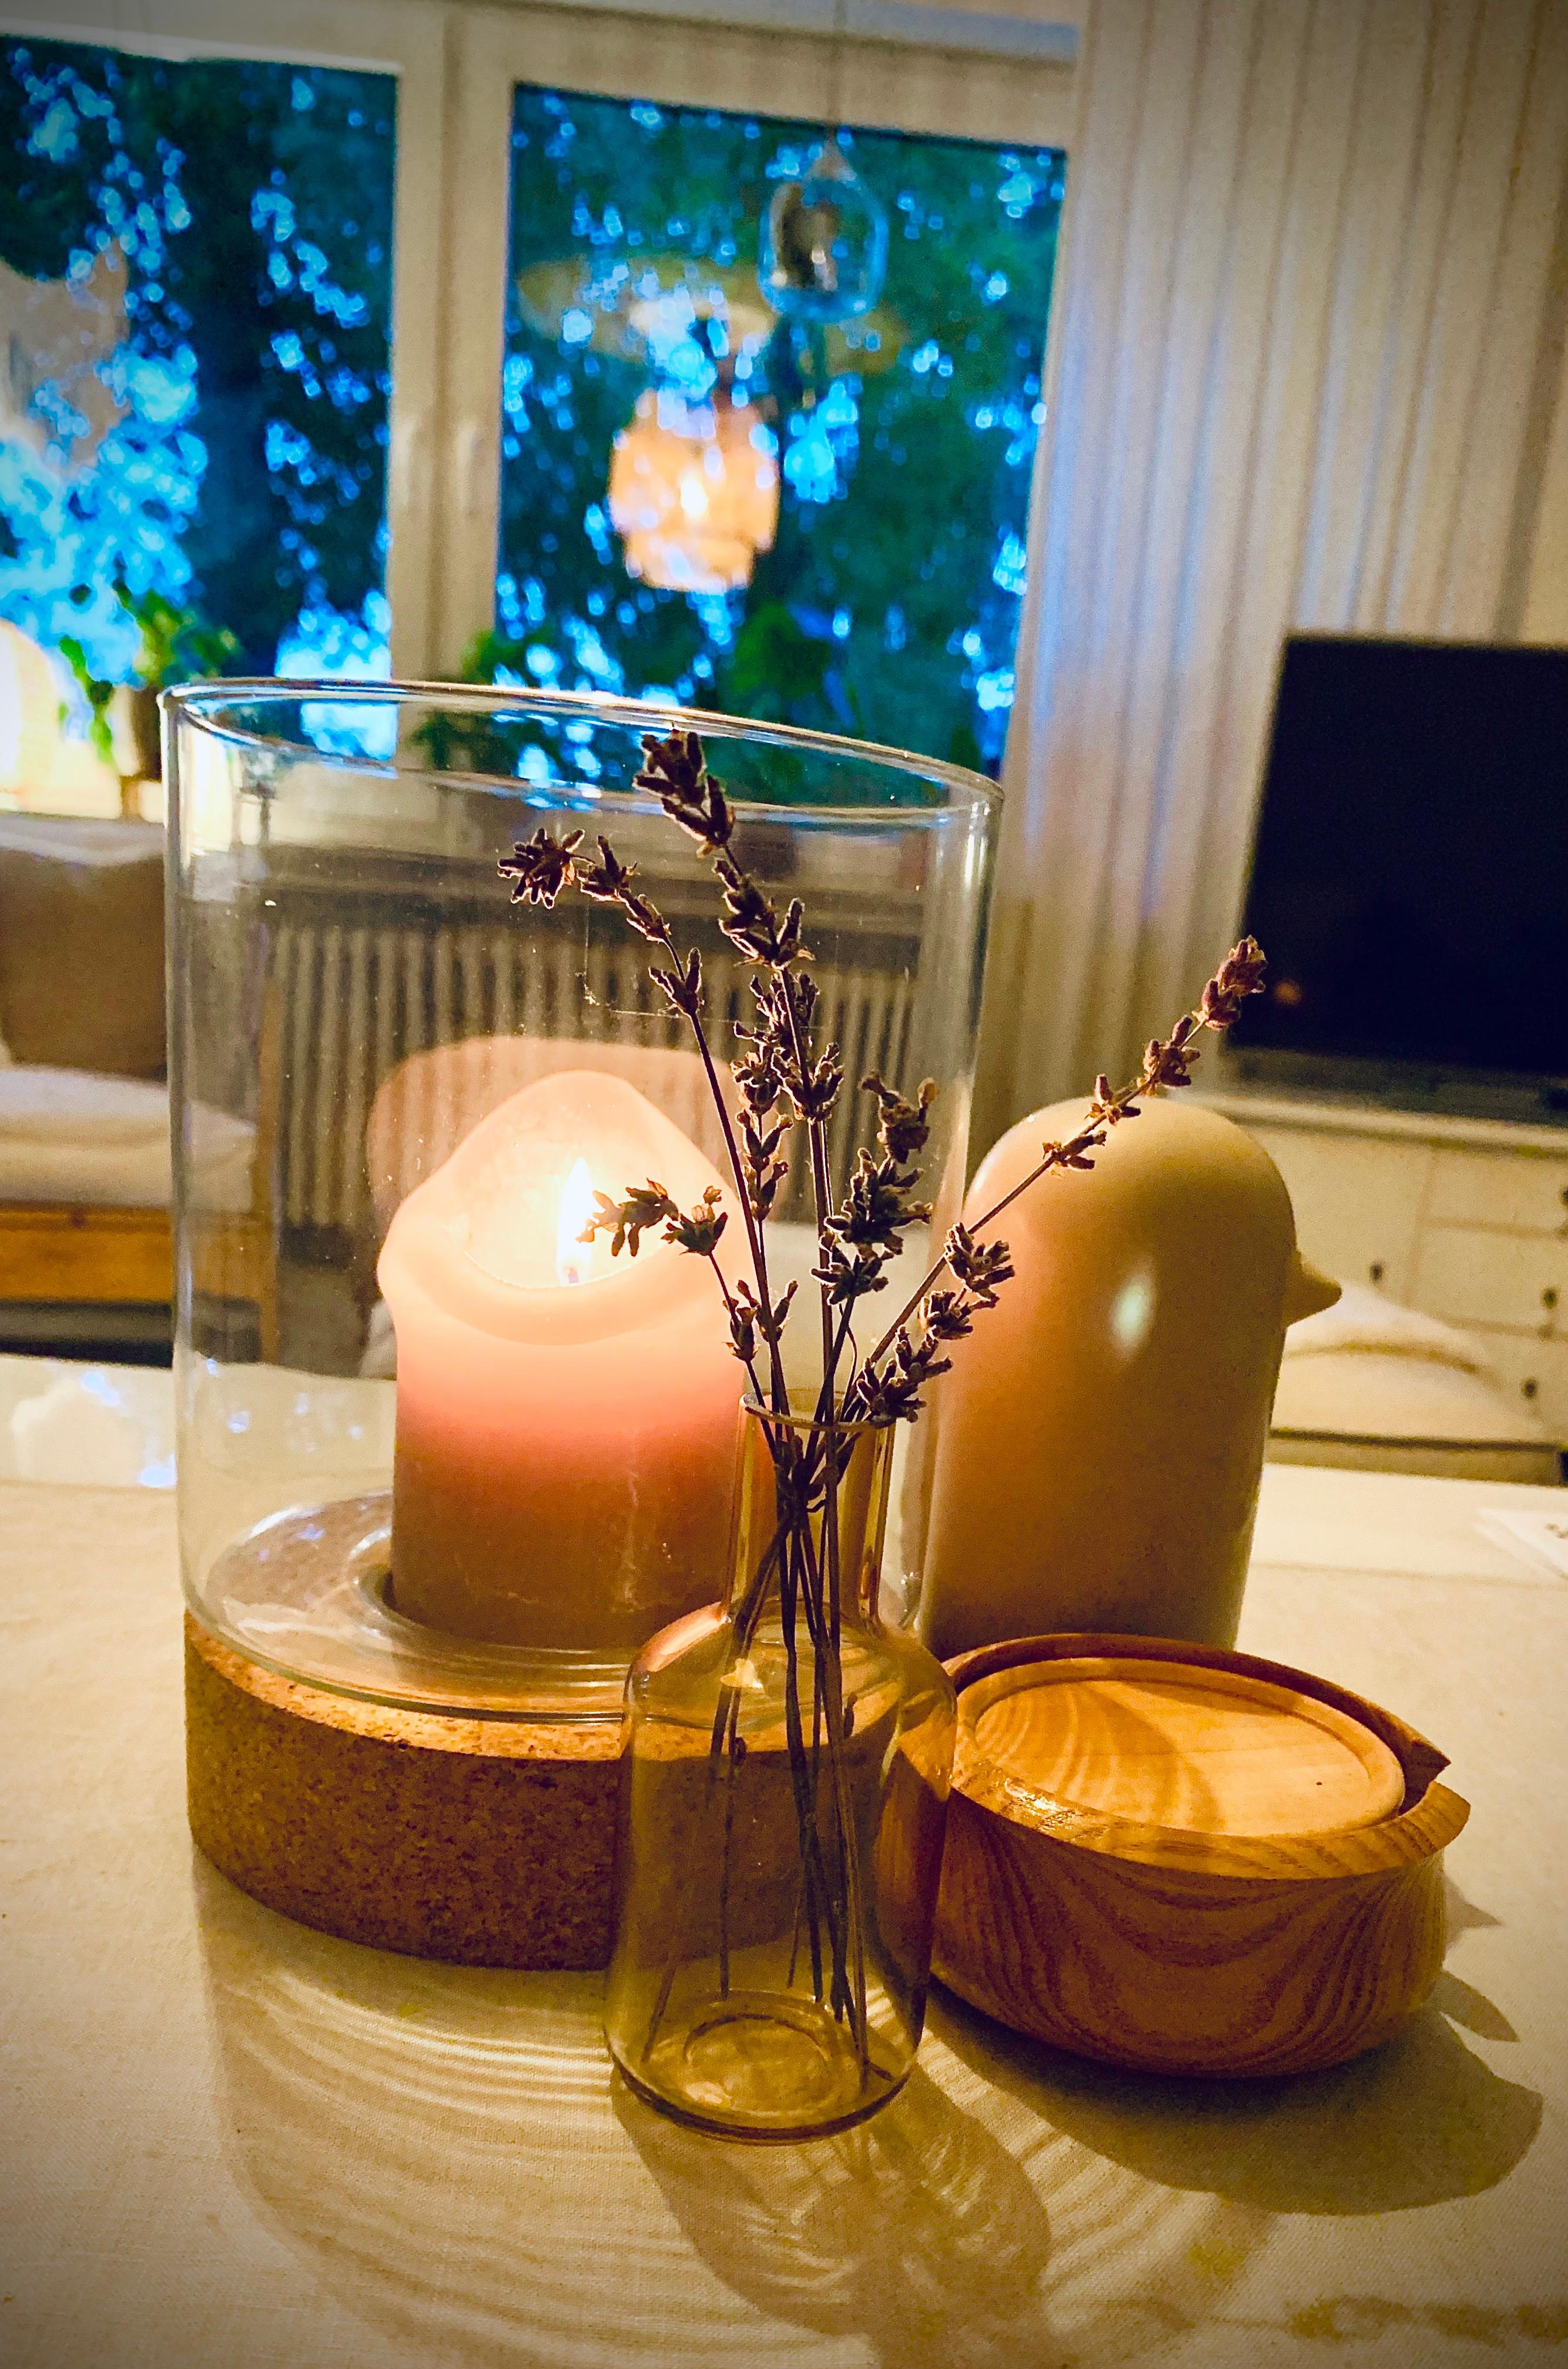 Meine #Tischdeko ist eher schlicht, so mag ich’s am liebsten....#Kerze #Lavendel